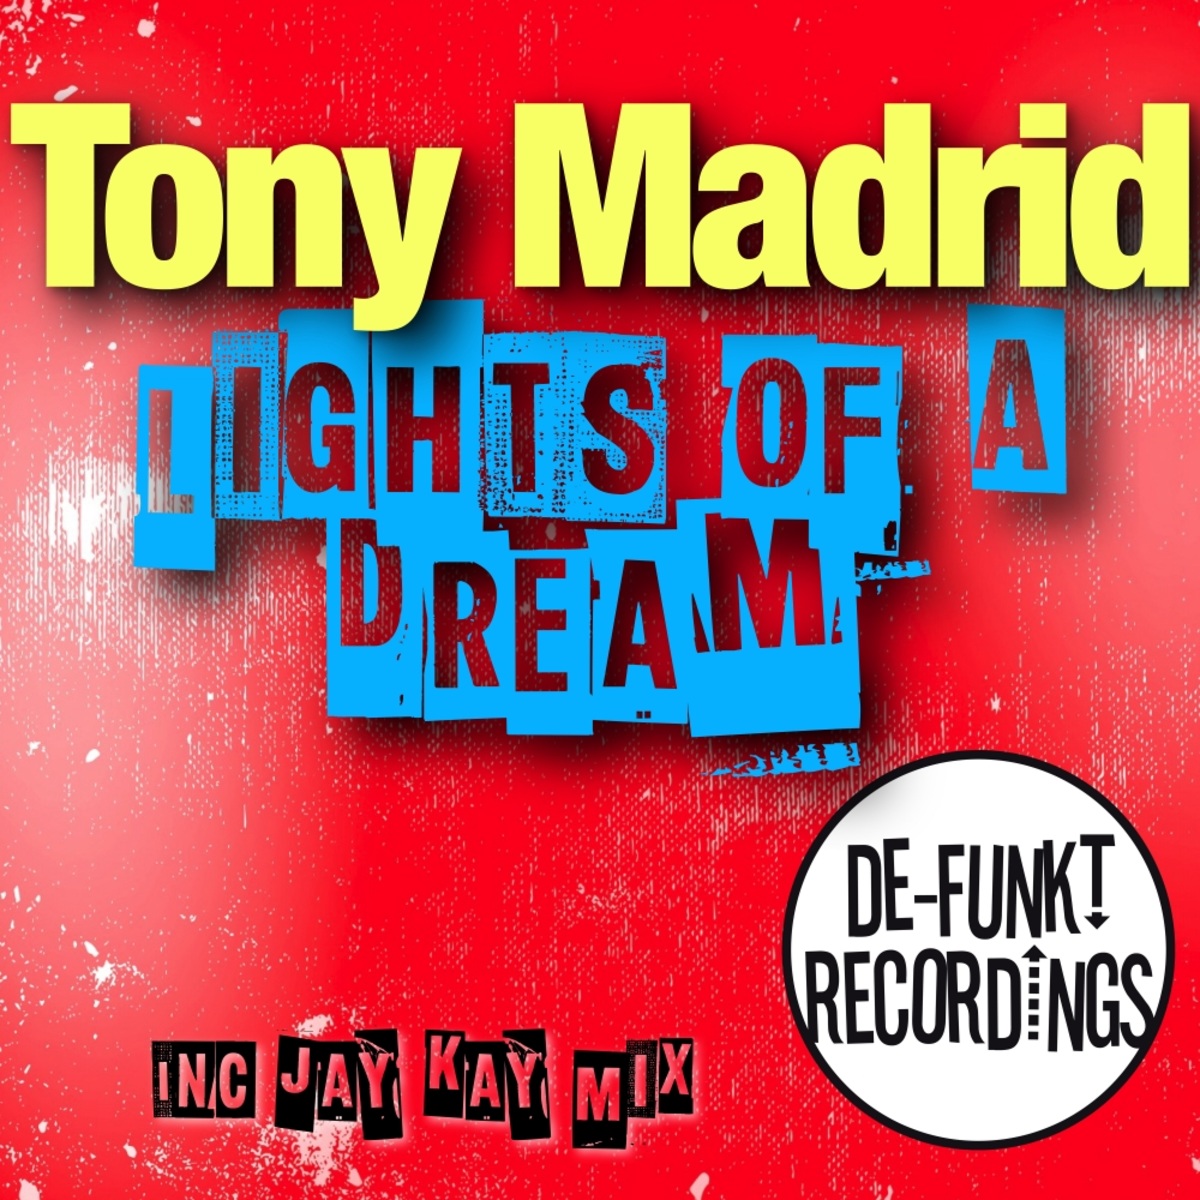 Tony Madrid - Lights Of A Dream / De-Funkt Recordings